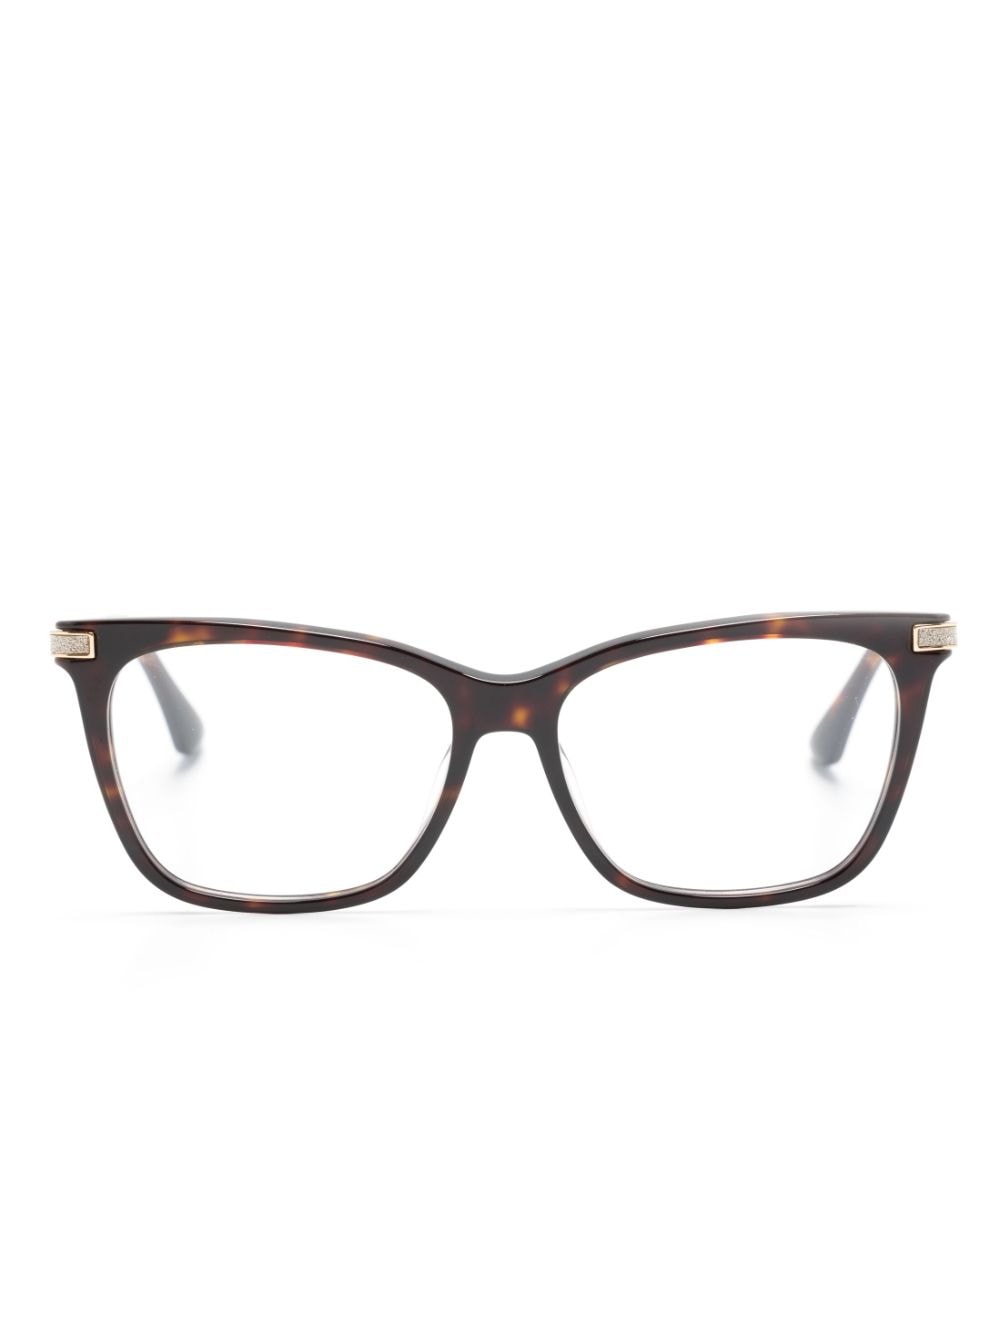 jimmy choo eyewear lunettes de vue à monture papillon ornée de paillettes - marron